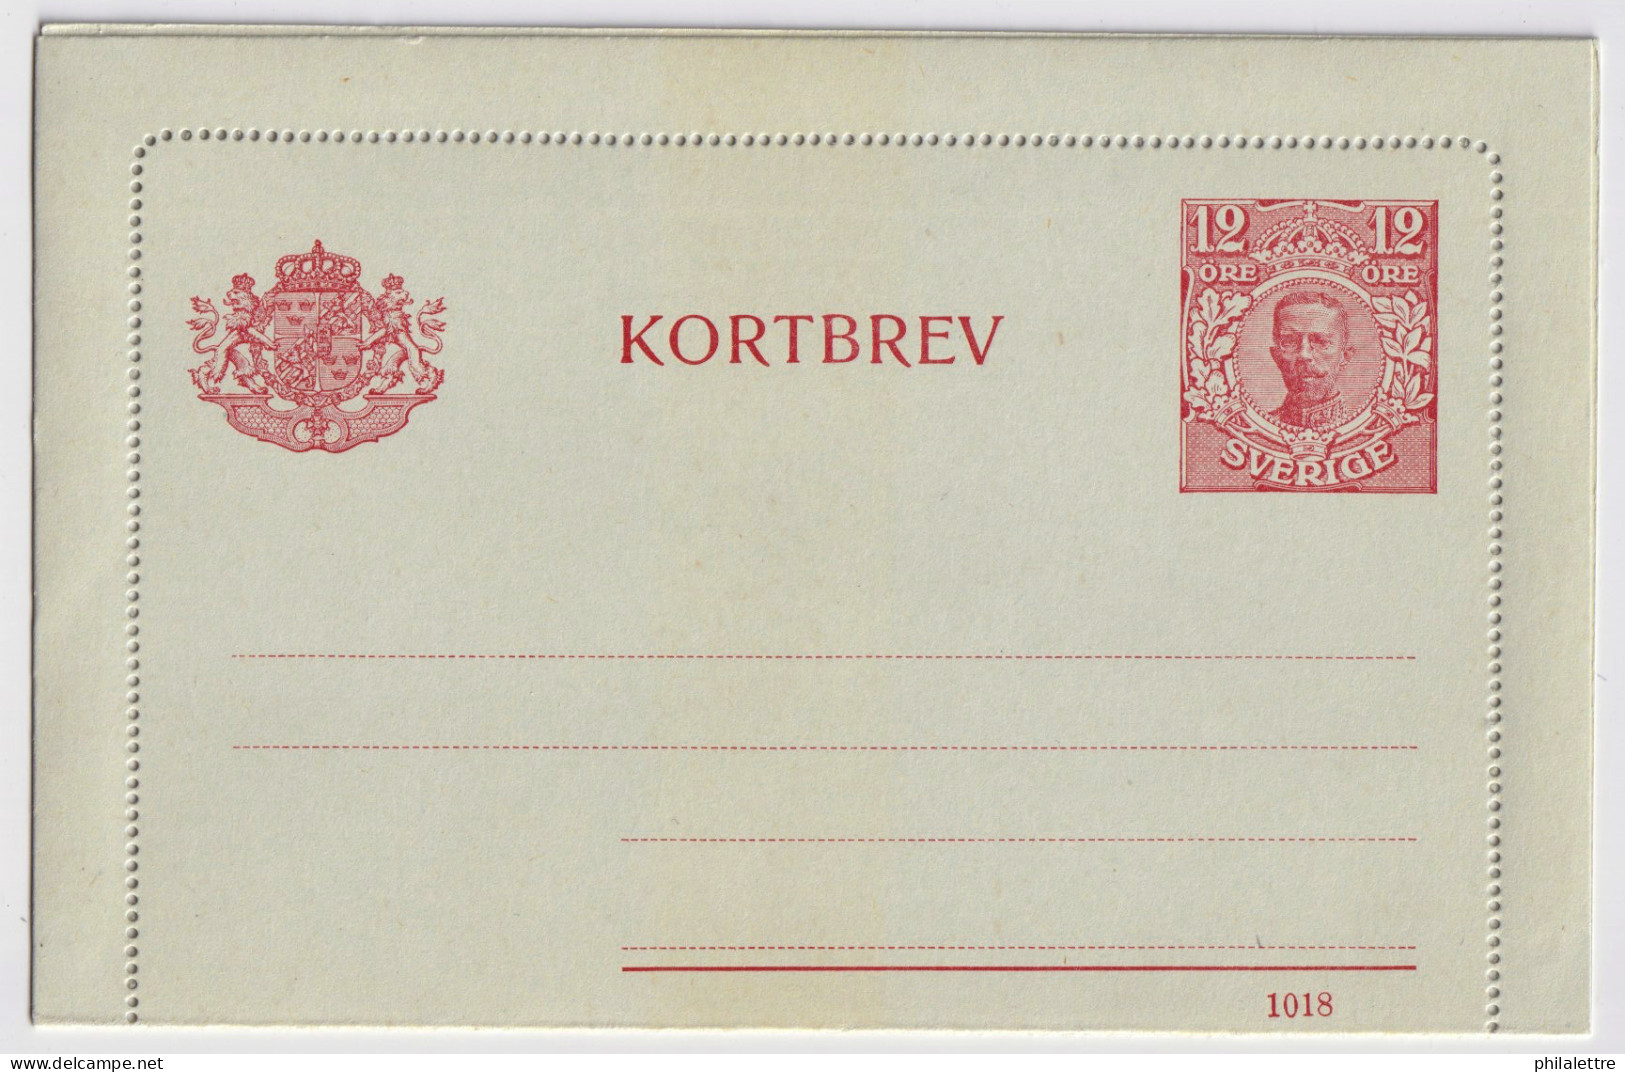 SUÈDE / SWEDEN - 1918 - Letter-Card Mi.K14 12ö Red (d.1018) Unused - Very Fine - Ganzsachen